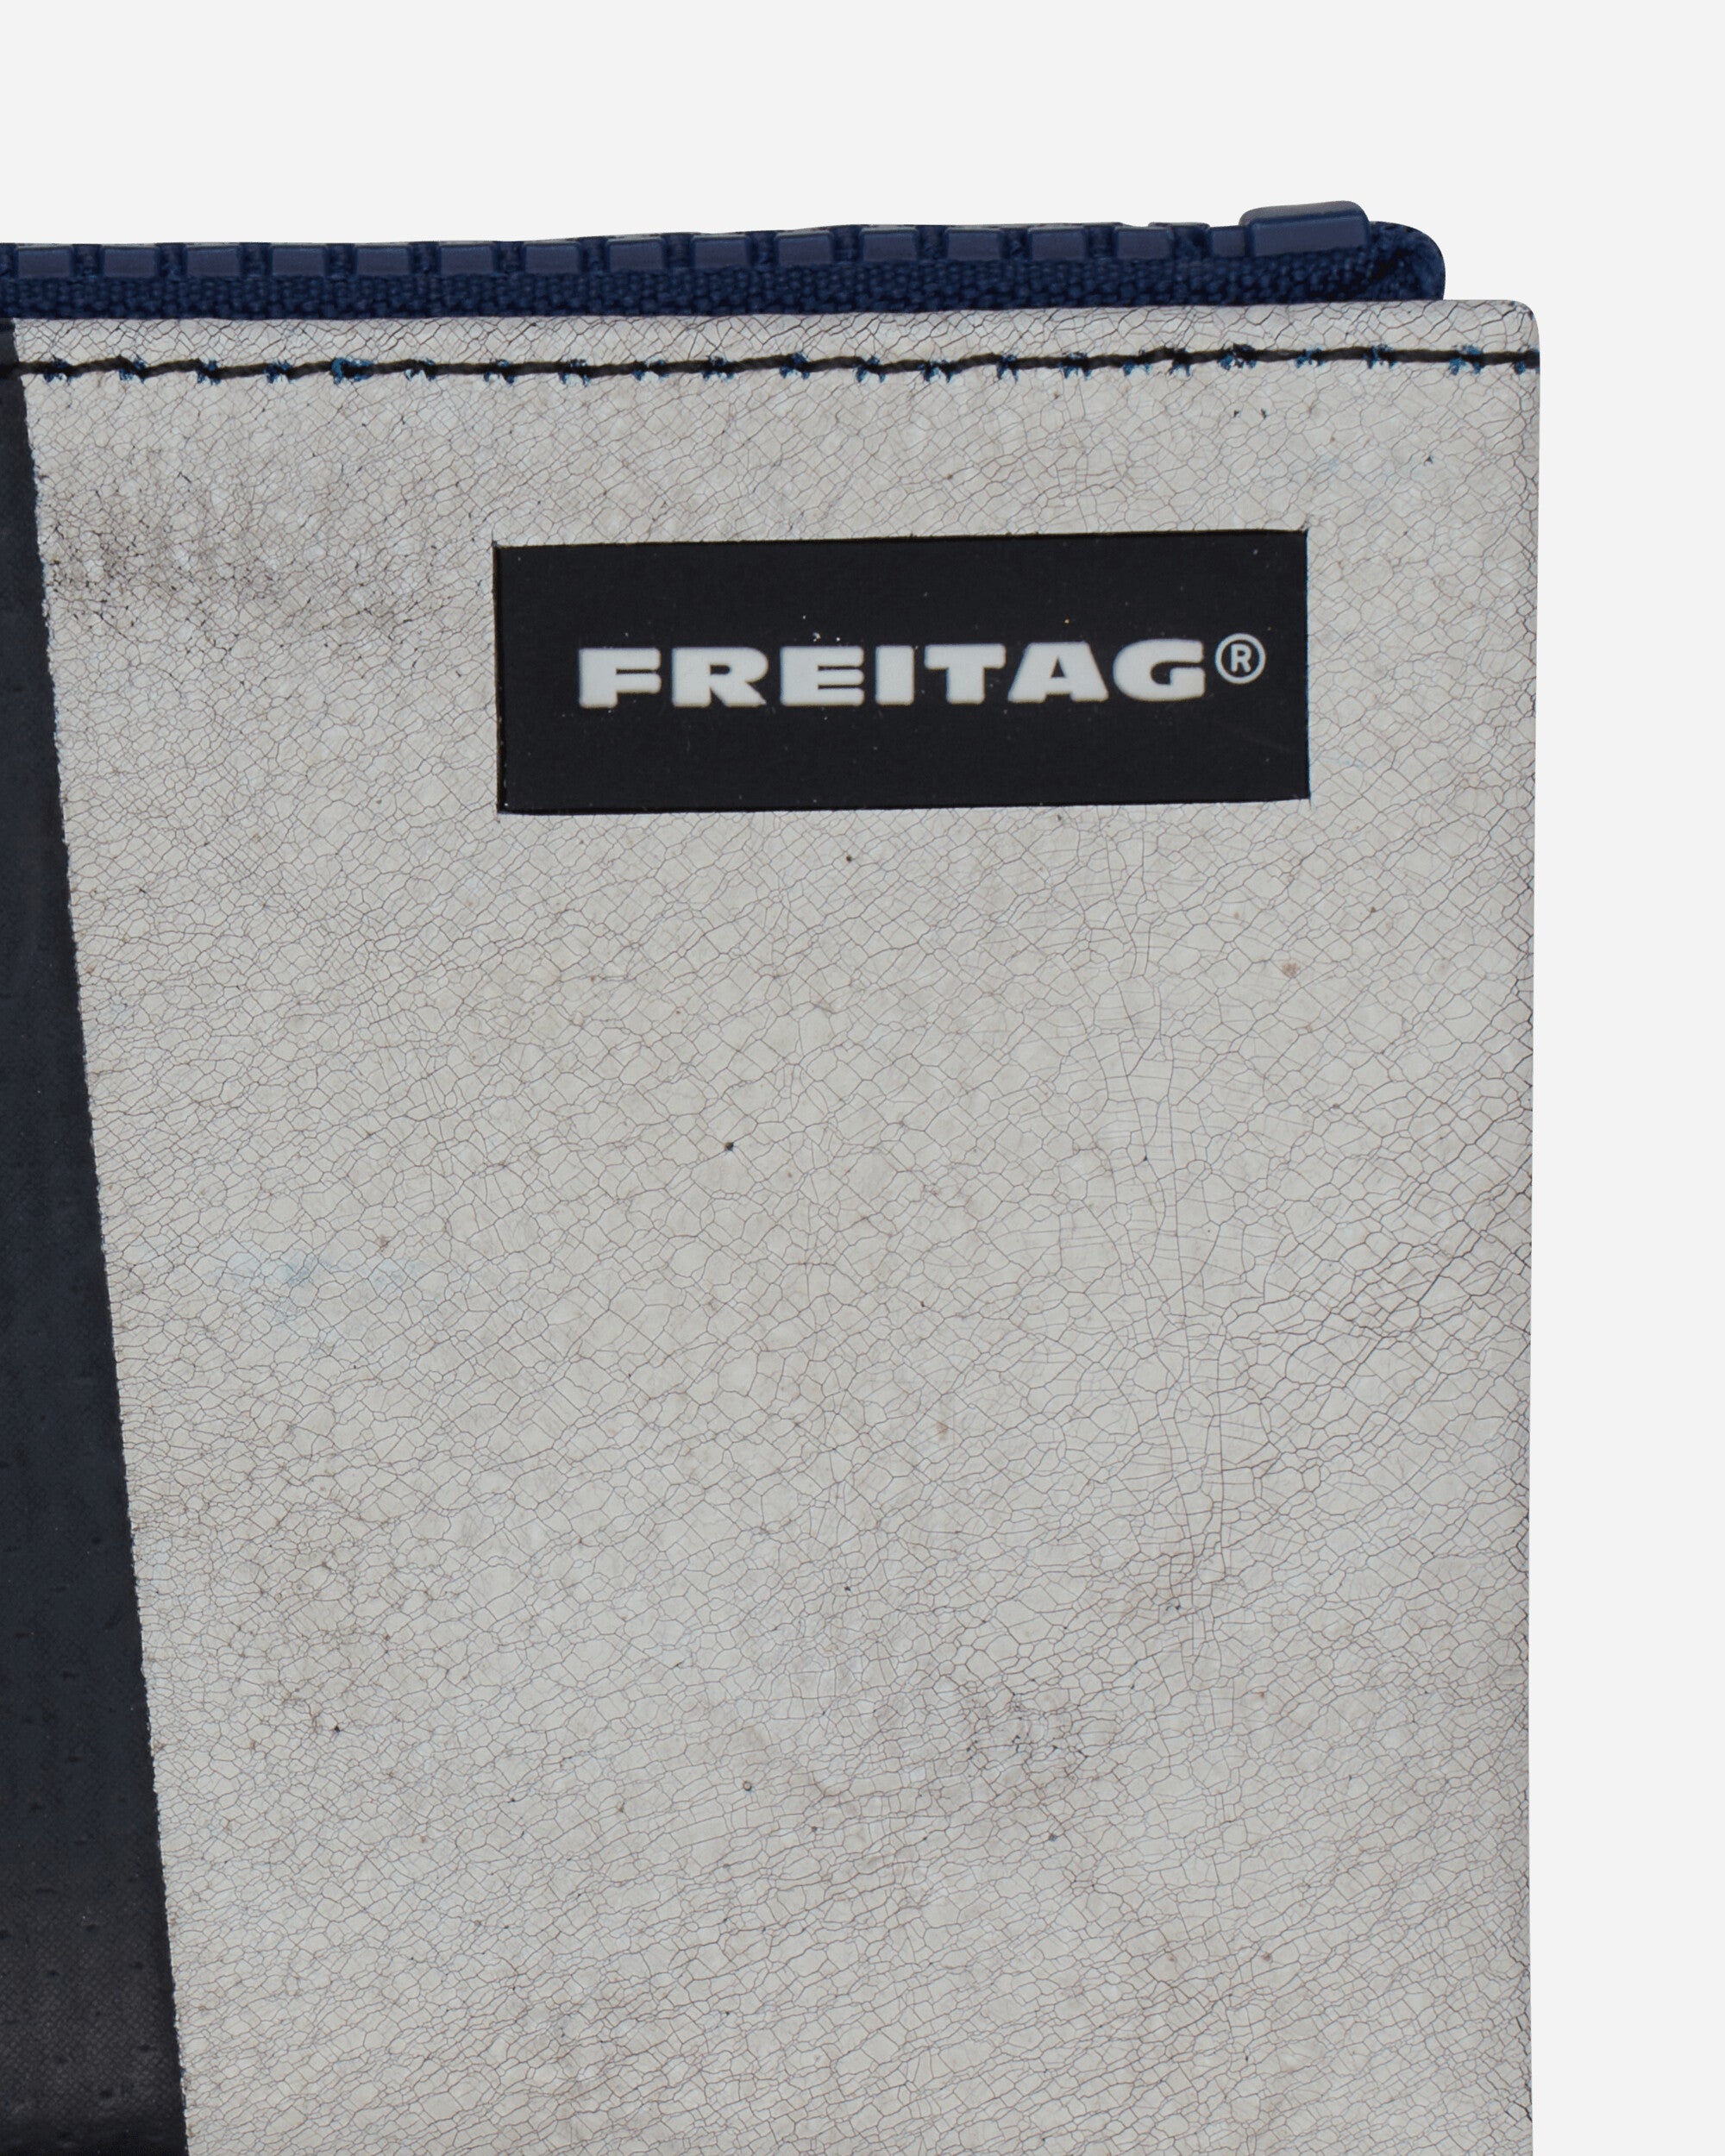 Freitag Blair Multi Bags and Backpacks Pouches FREITAGF05 009